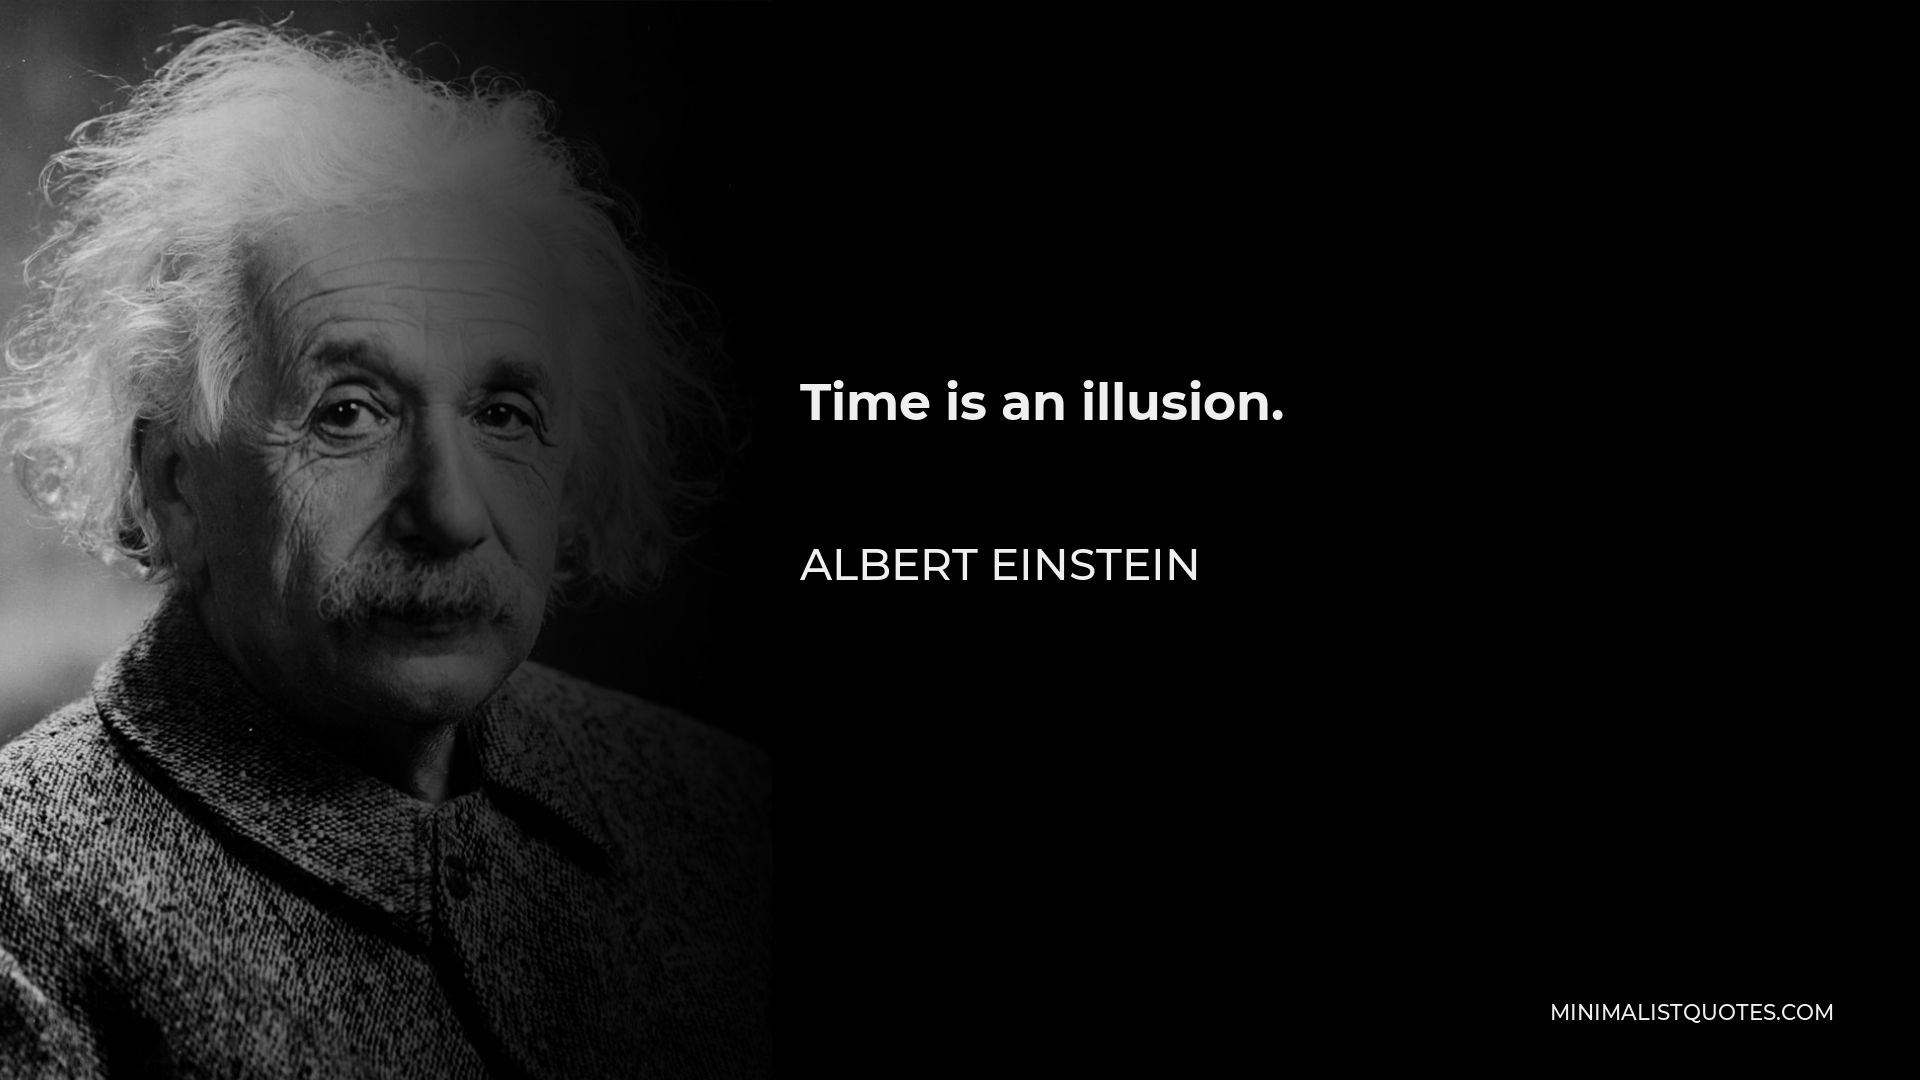 Albert Einstein Quote - Time is an illusion.